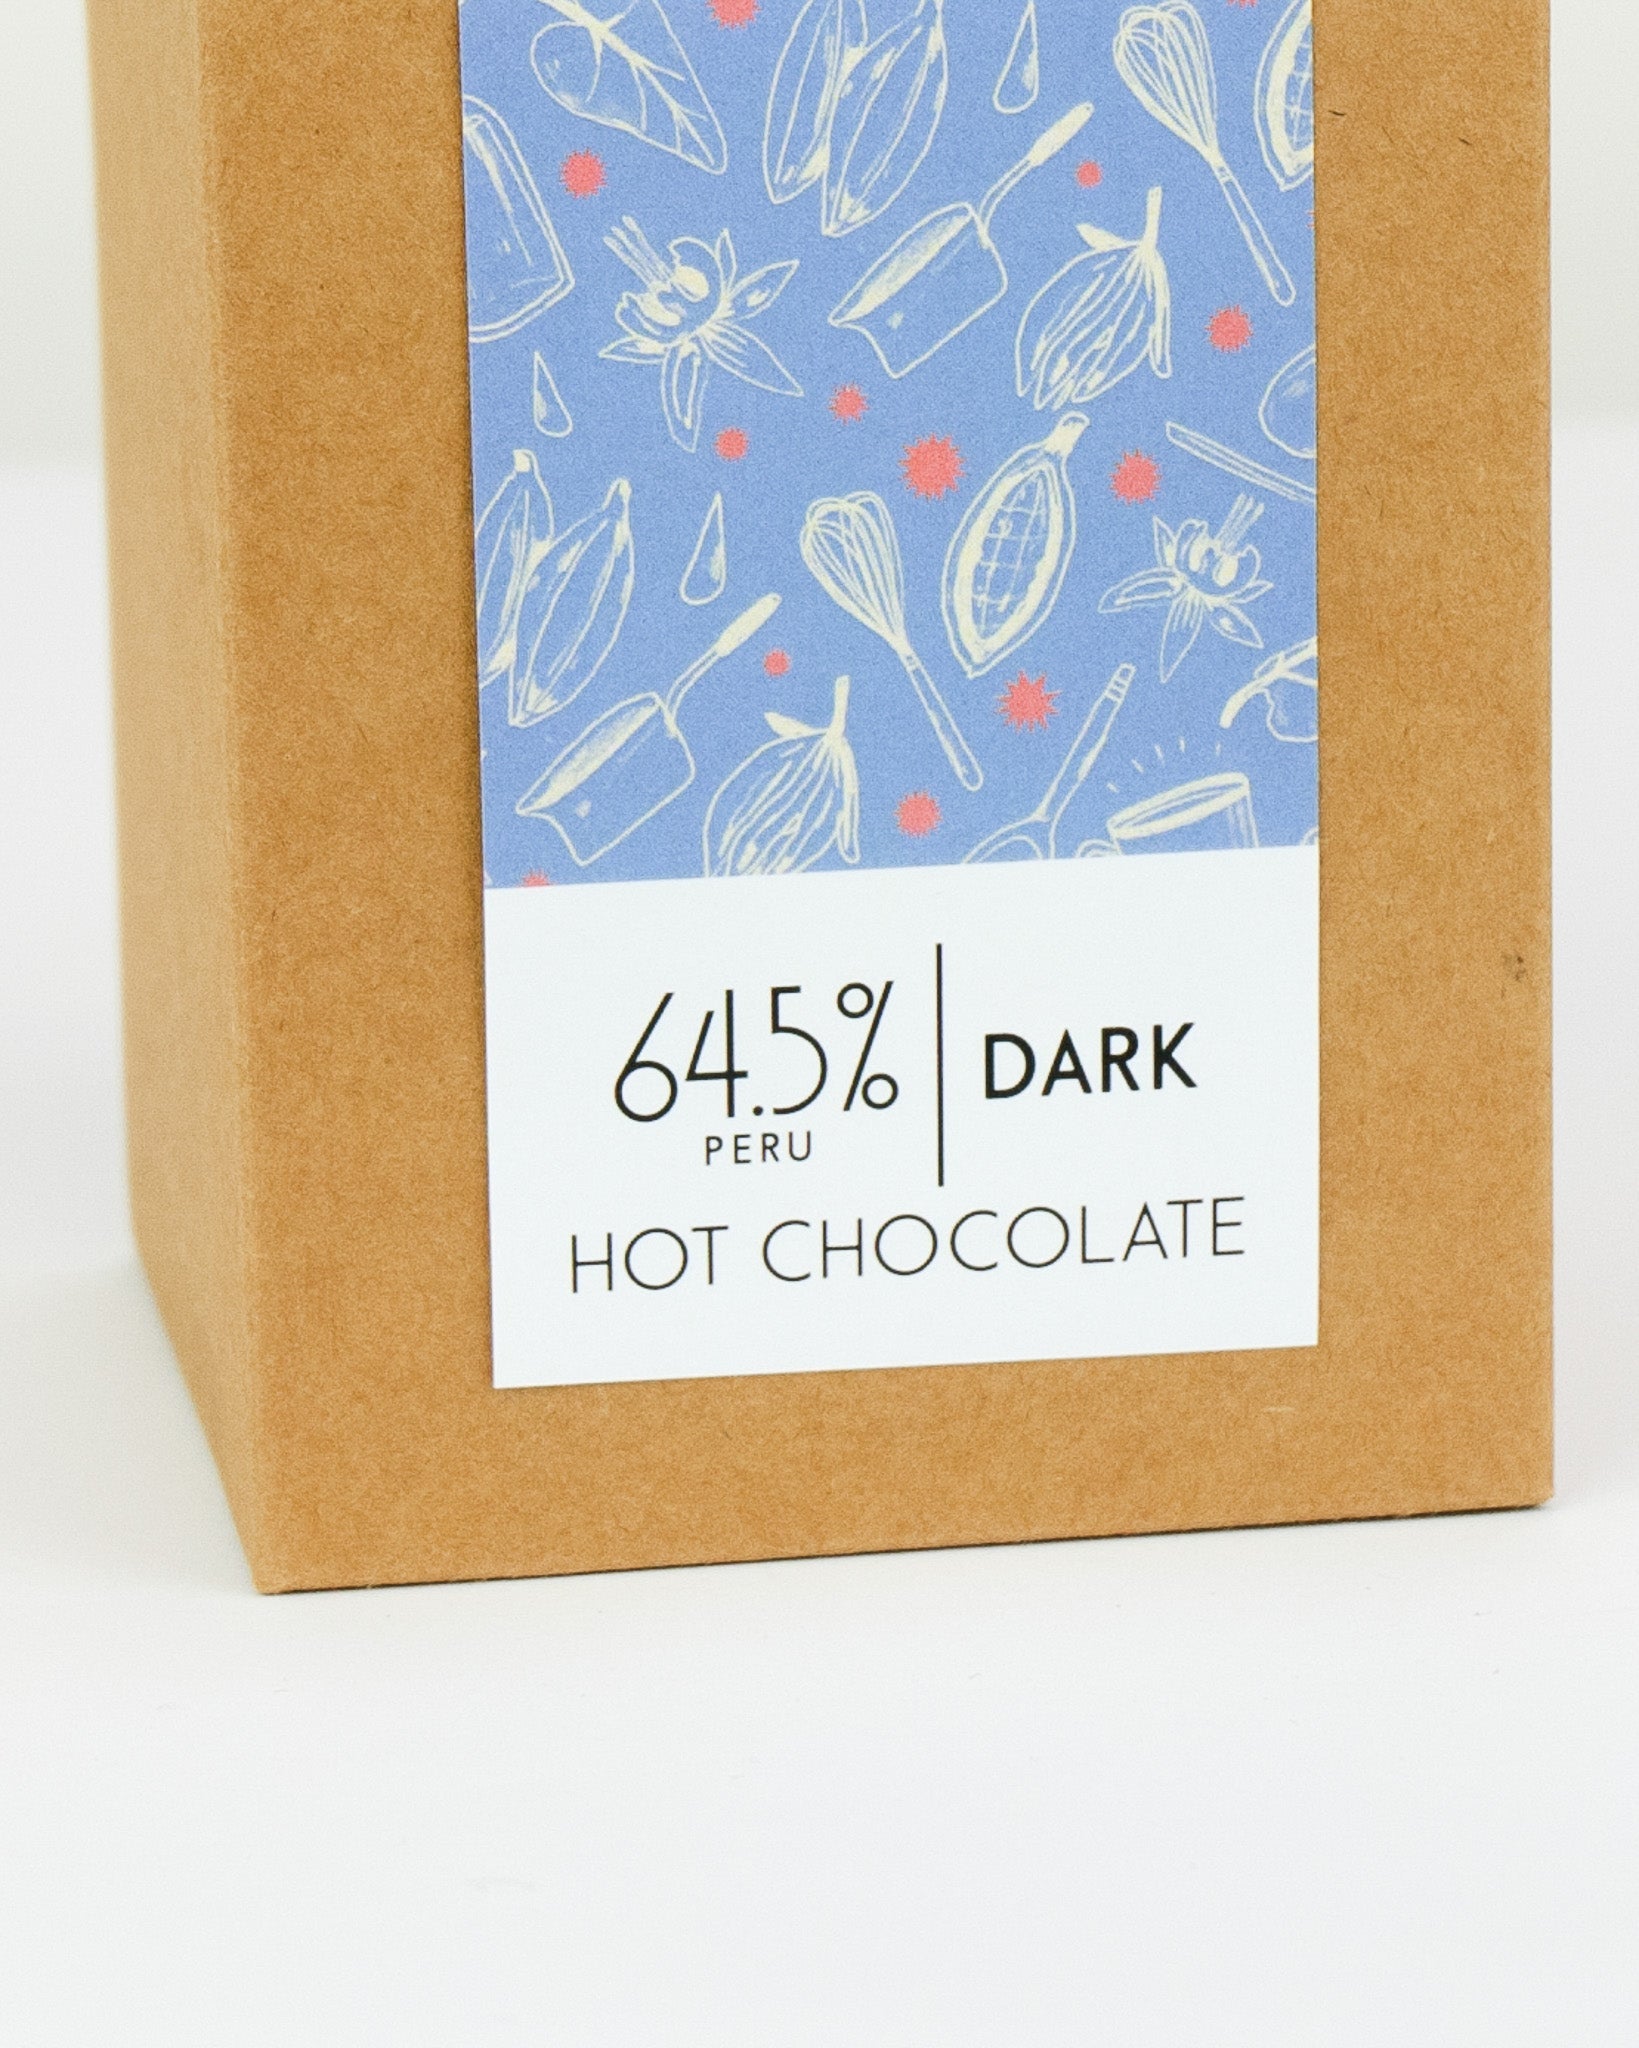 Dark Hot Chocolate - 64.5% Peruvian